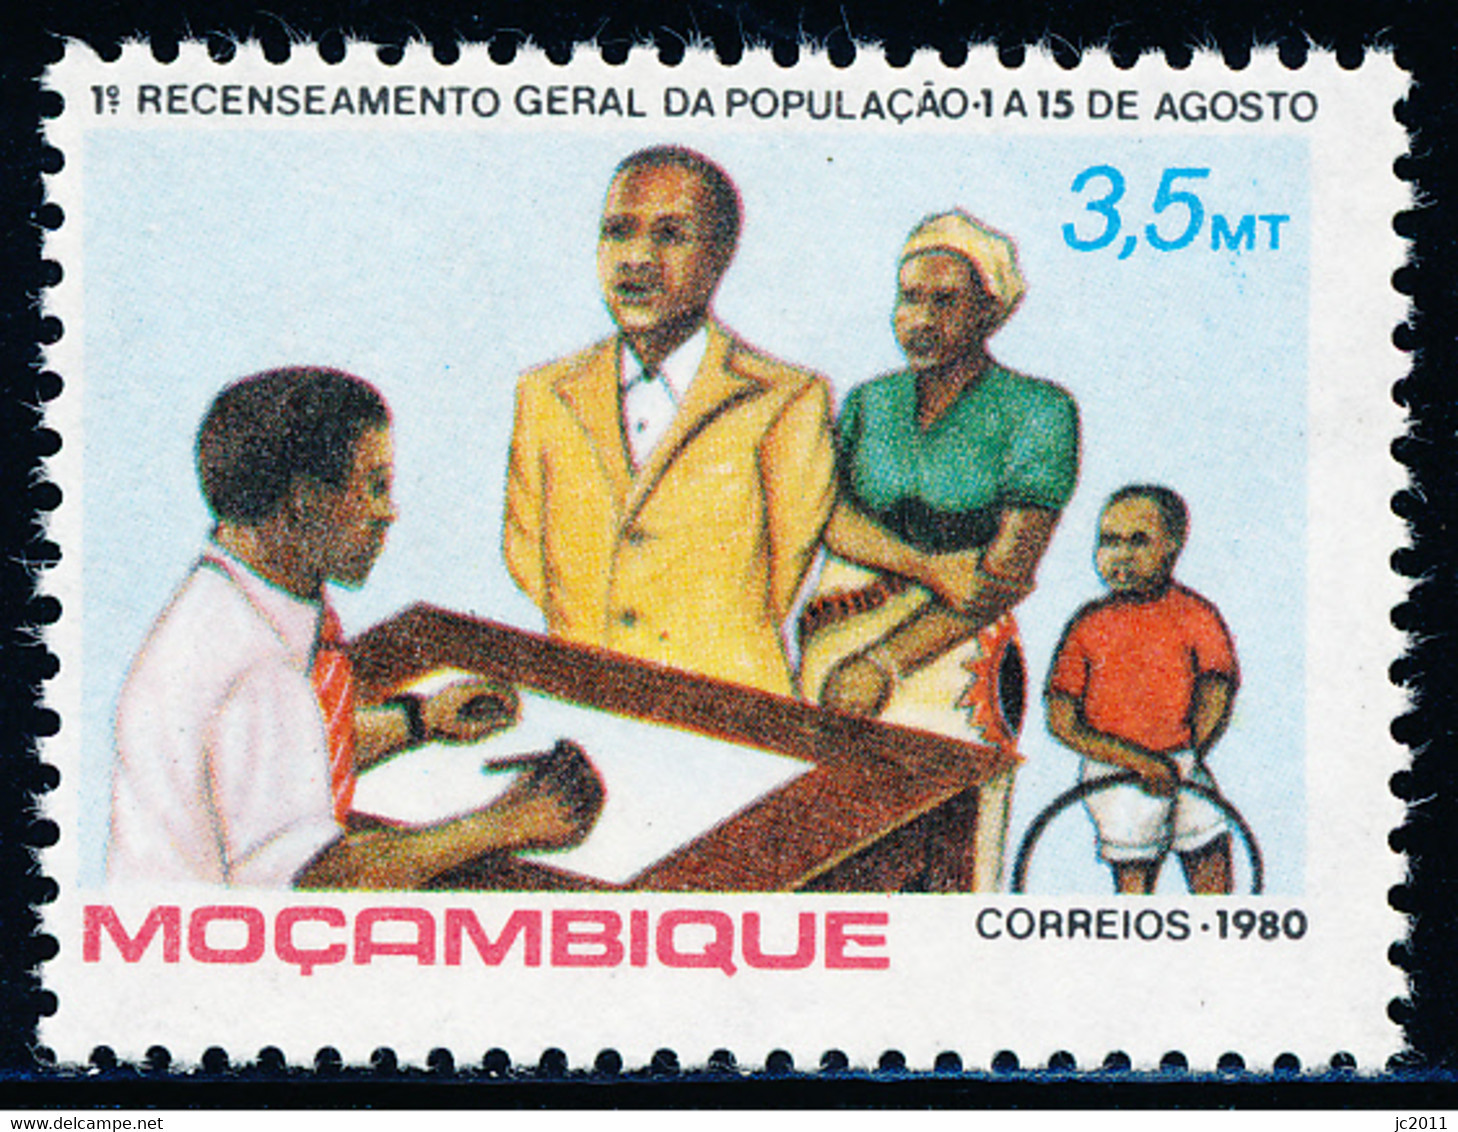 Mozambique - 1980 - Population Census - MNH - Mozambique